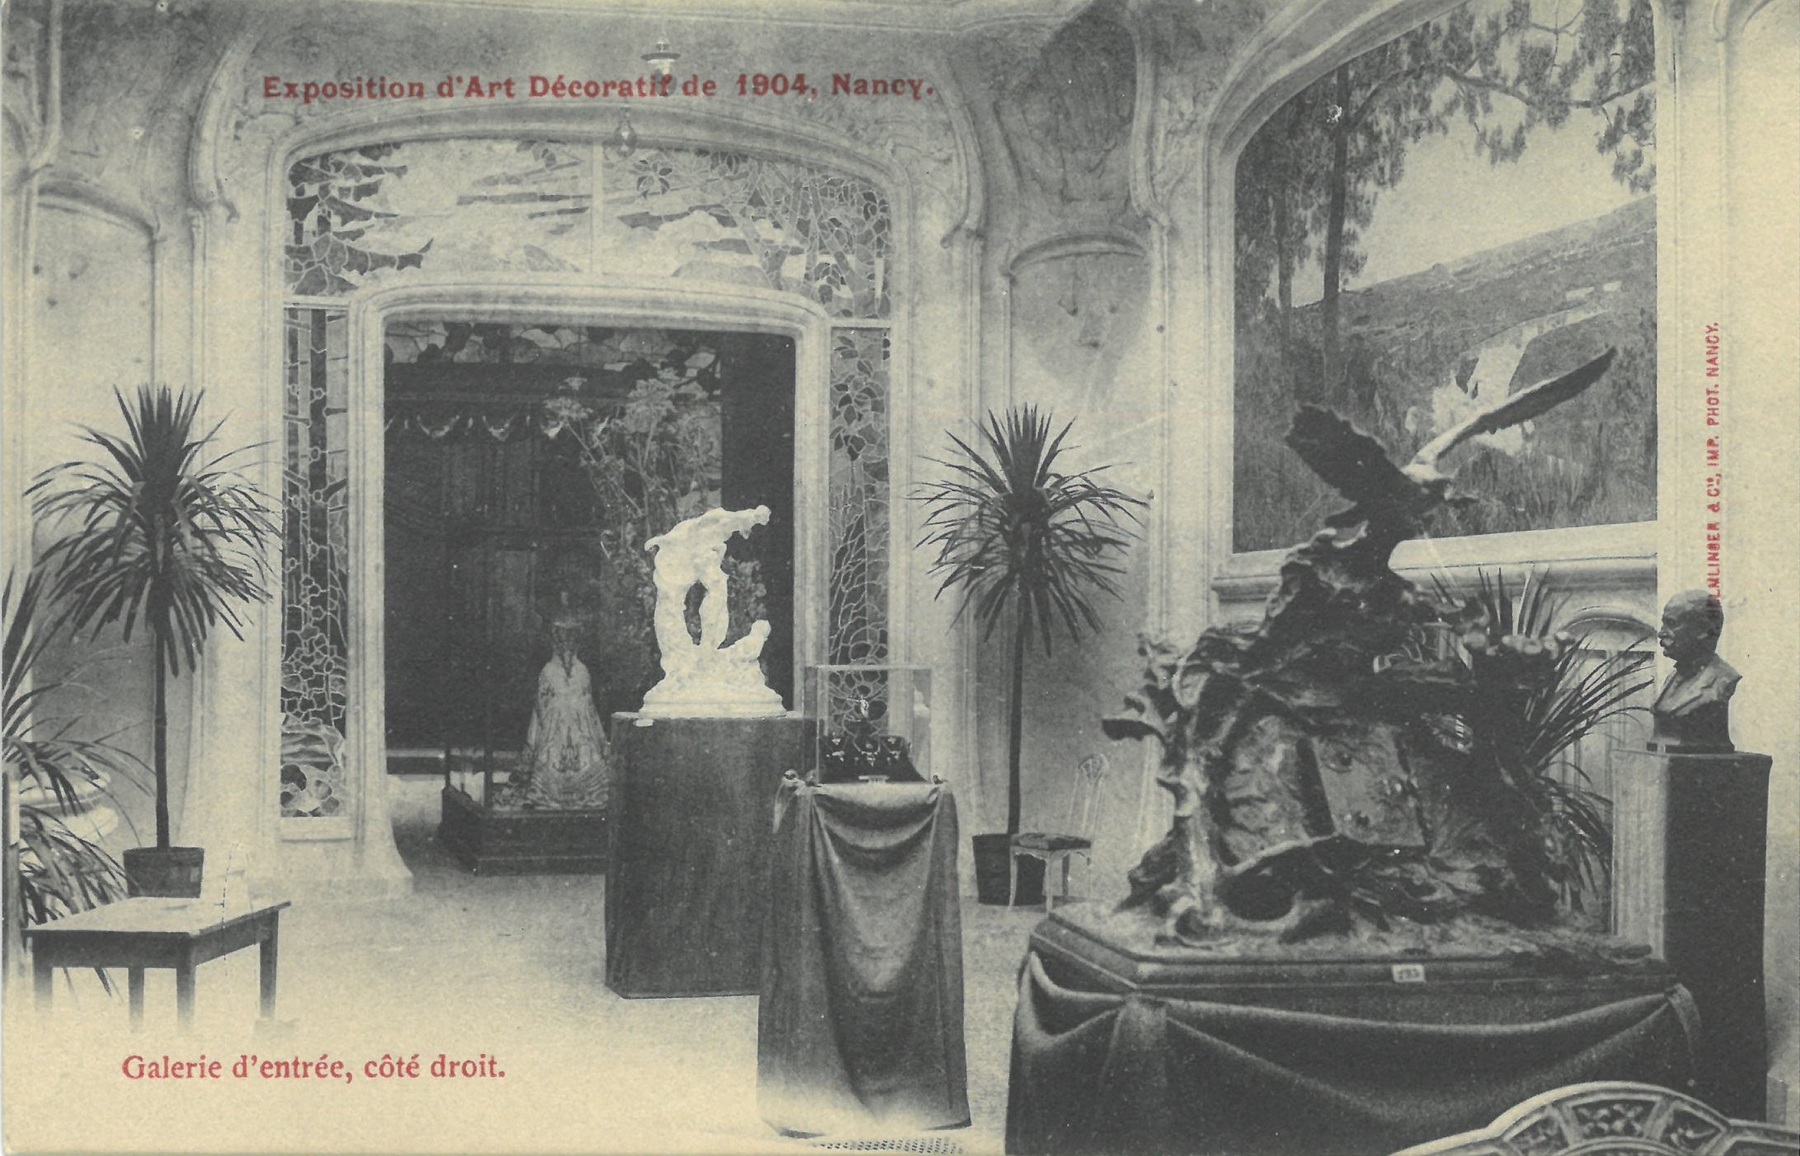 Contenu du Exposition d'Art décoratif de 1904, Nancy